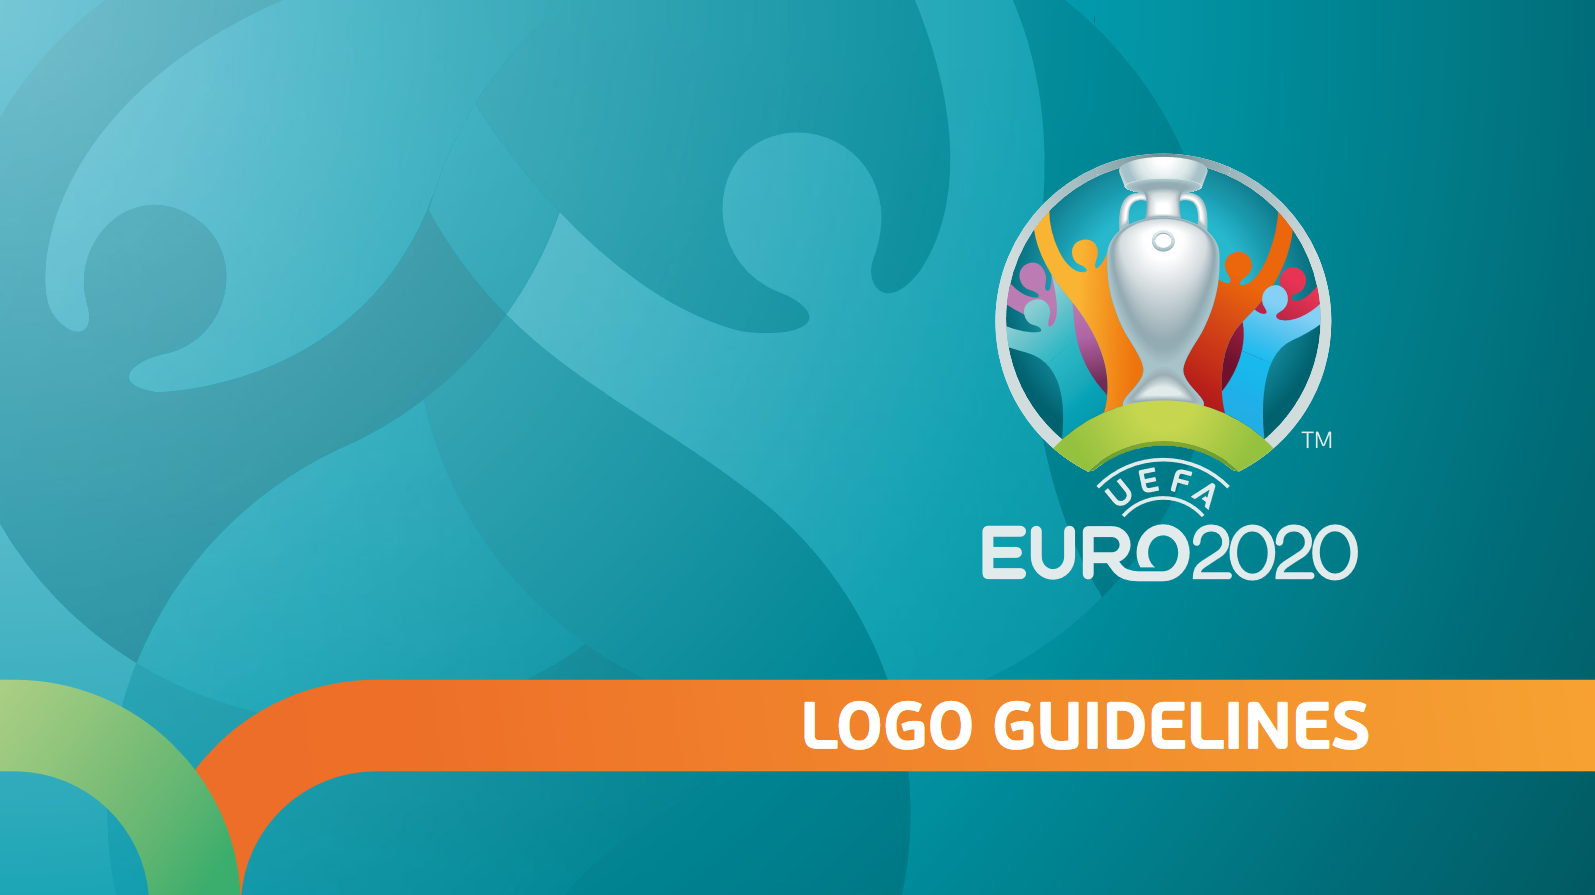 EURO 2020's Brand Guide